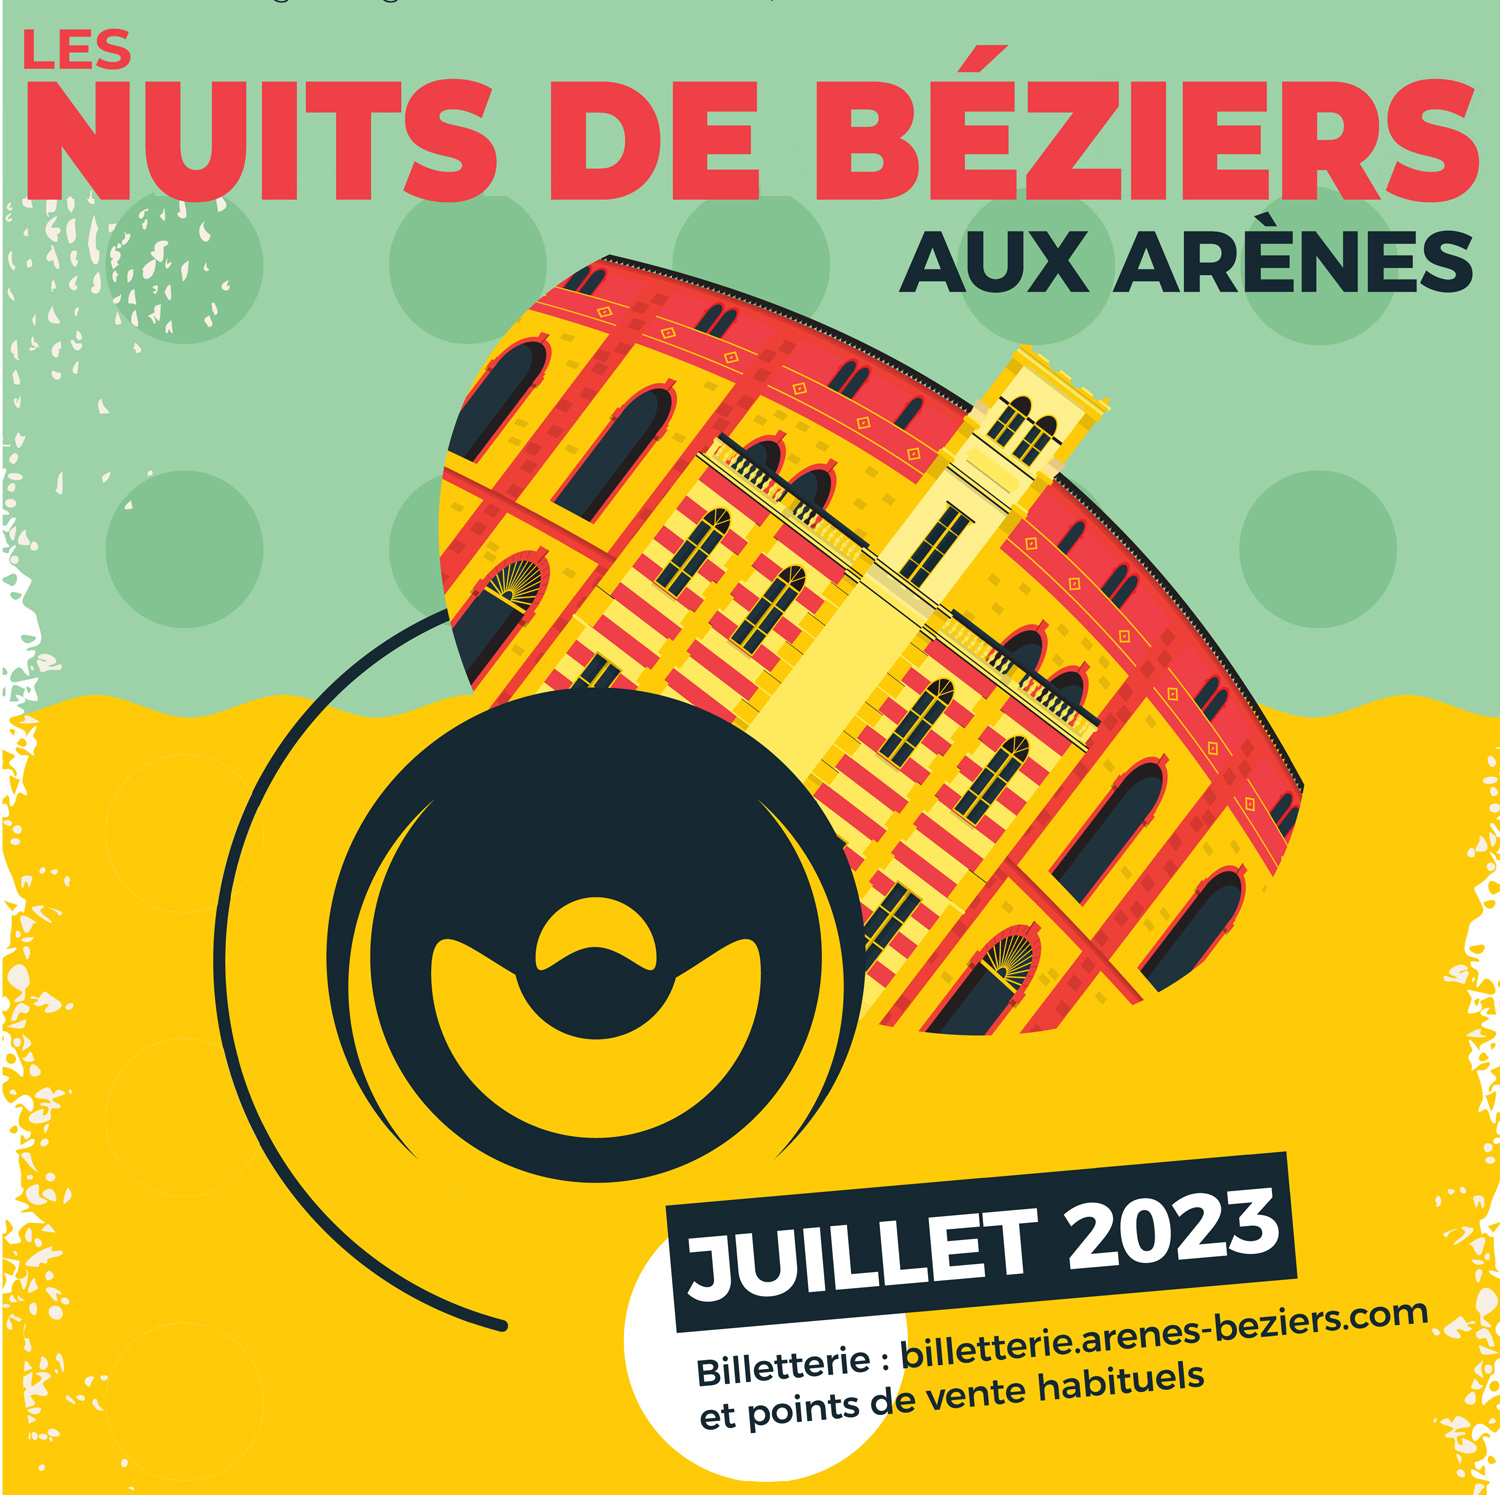 Featured image for “En Juillet, votre Hôtel de Charme au cœur des festivités de la Ville de Béziers.”